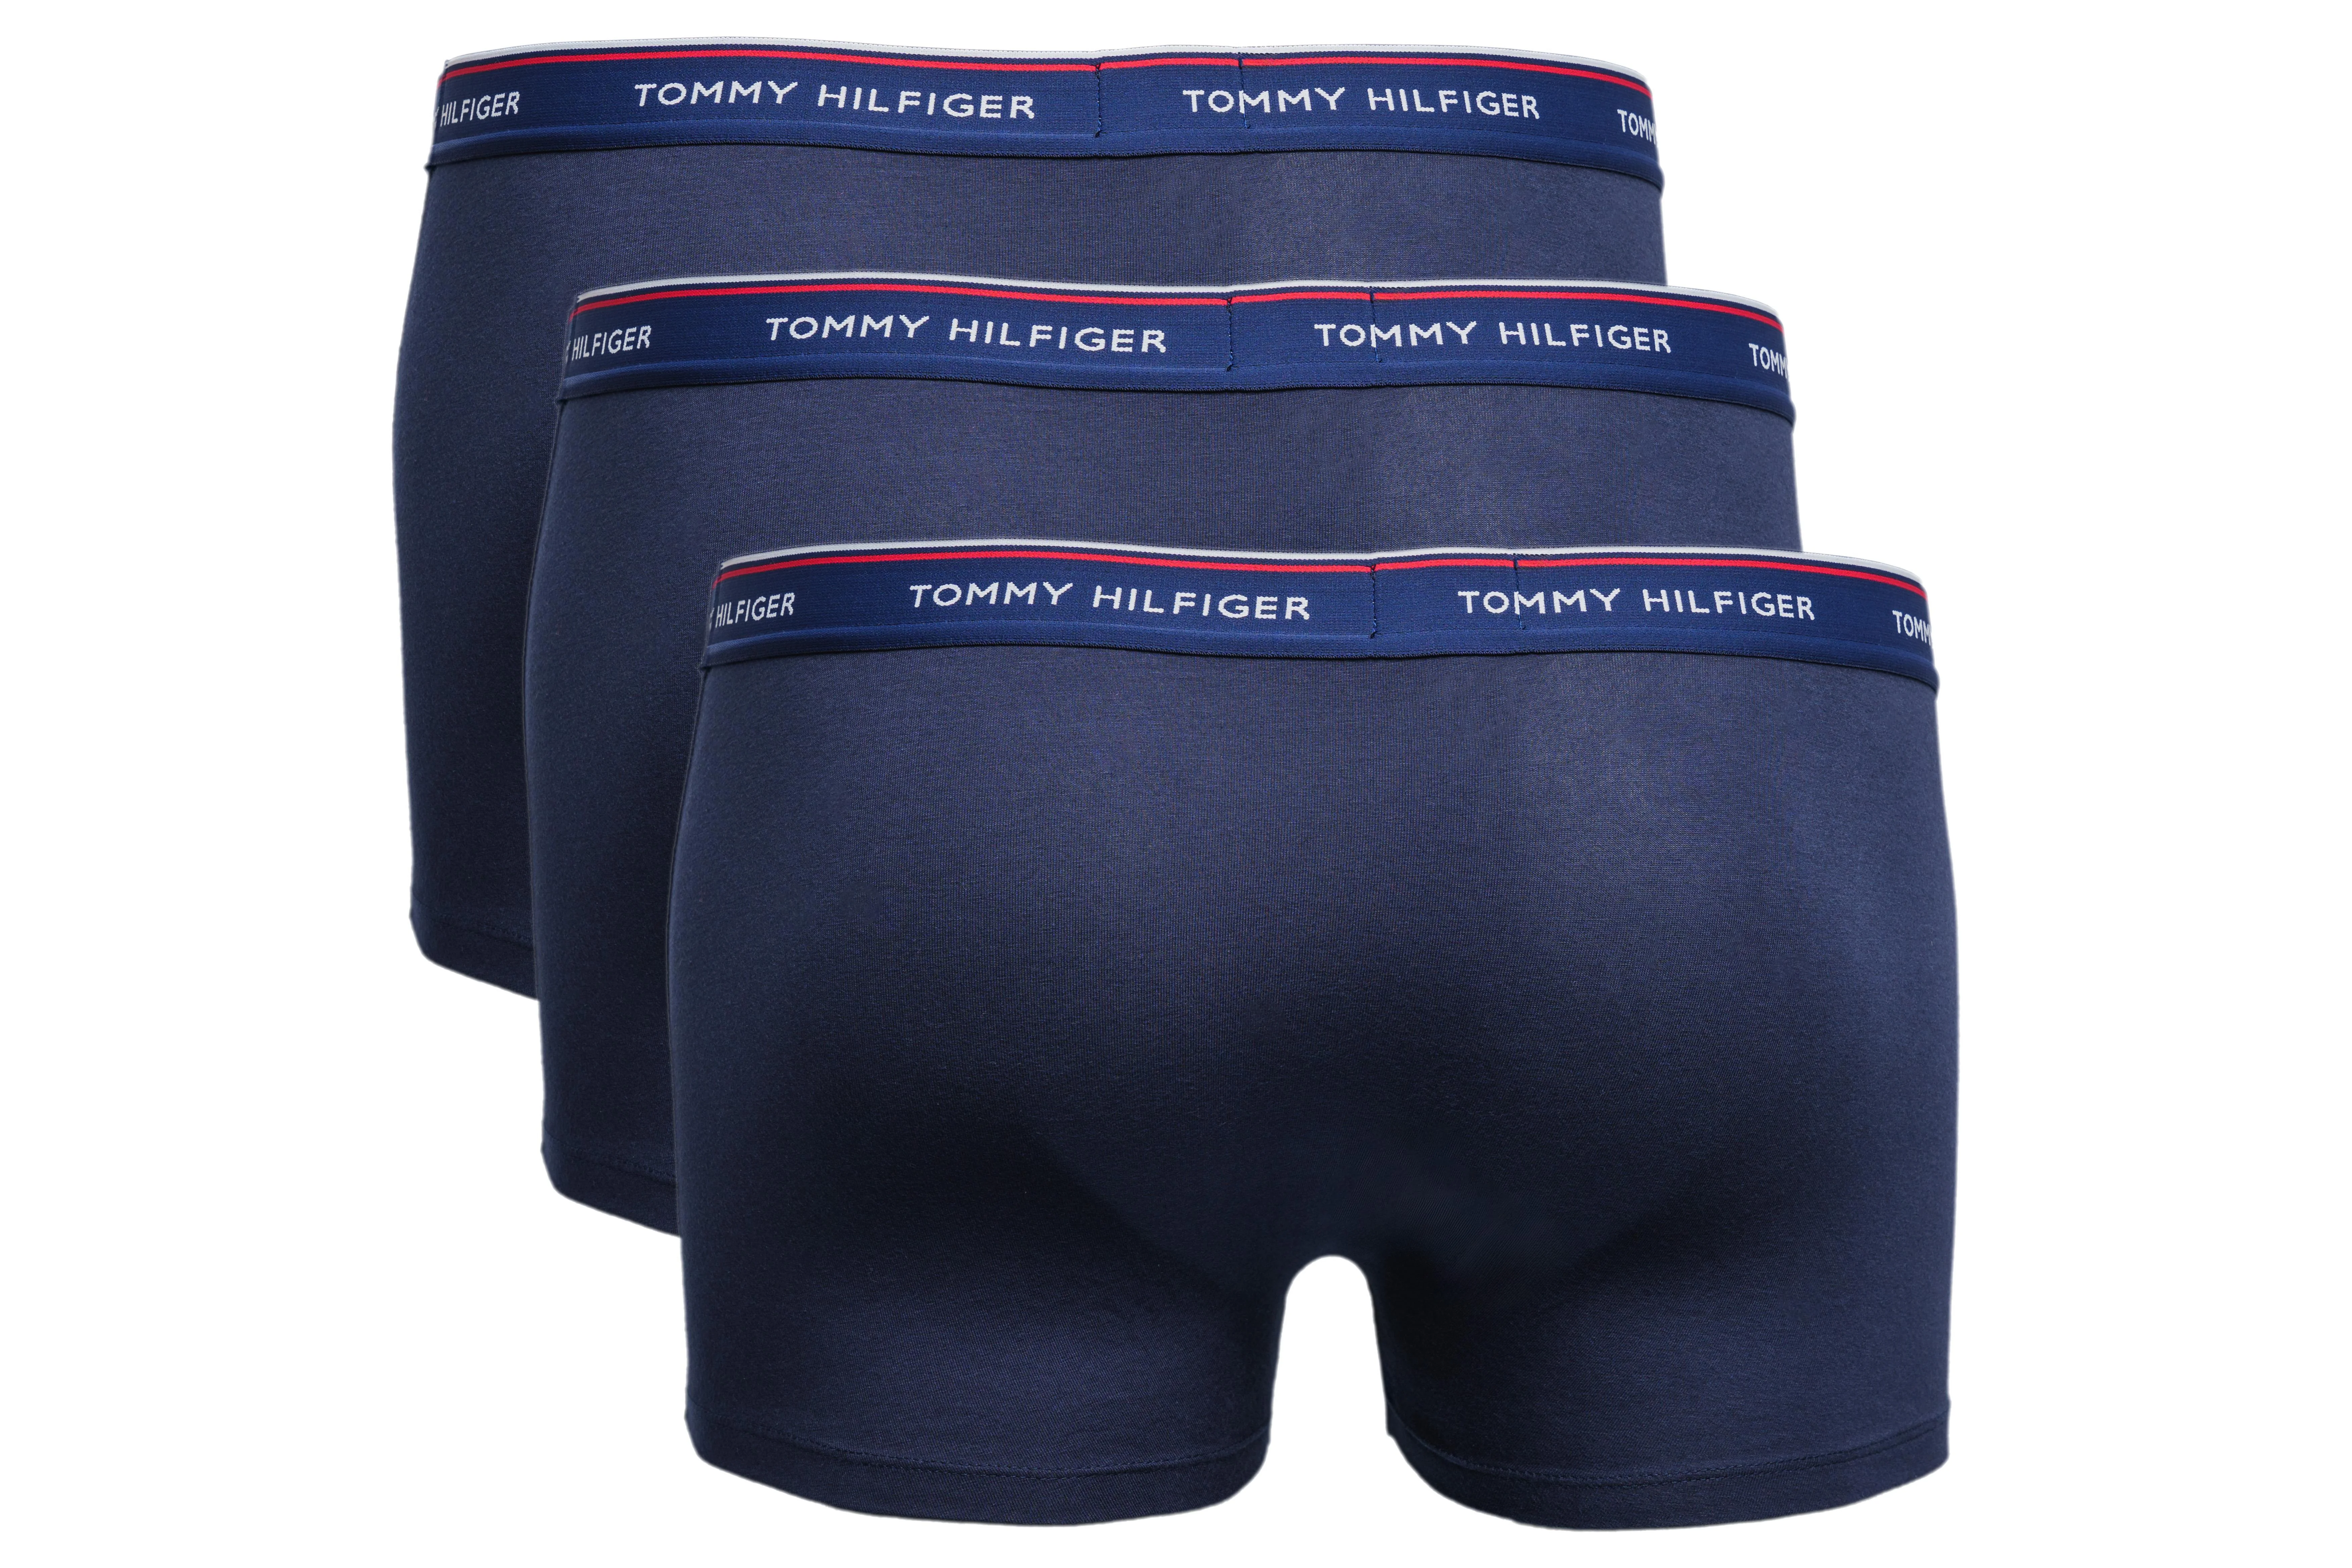 TOMMY HILFIGER 3er-Pack Boxershorts, Farbe dunkelblau, Größe XL